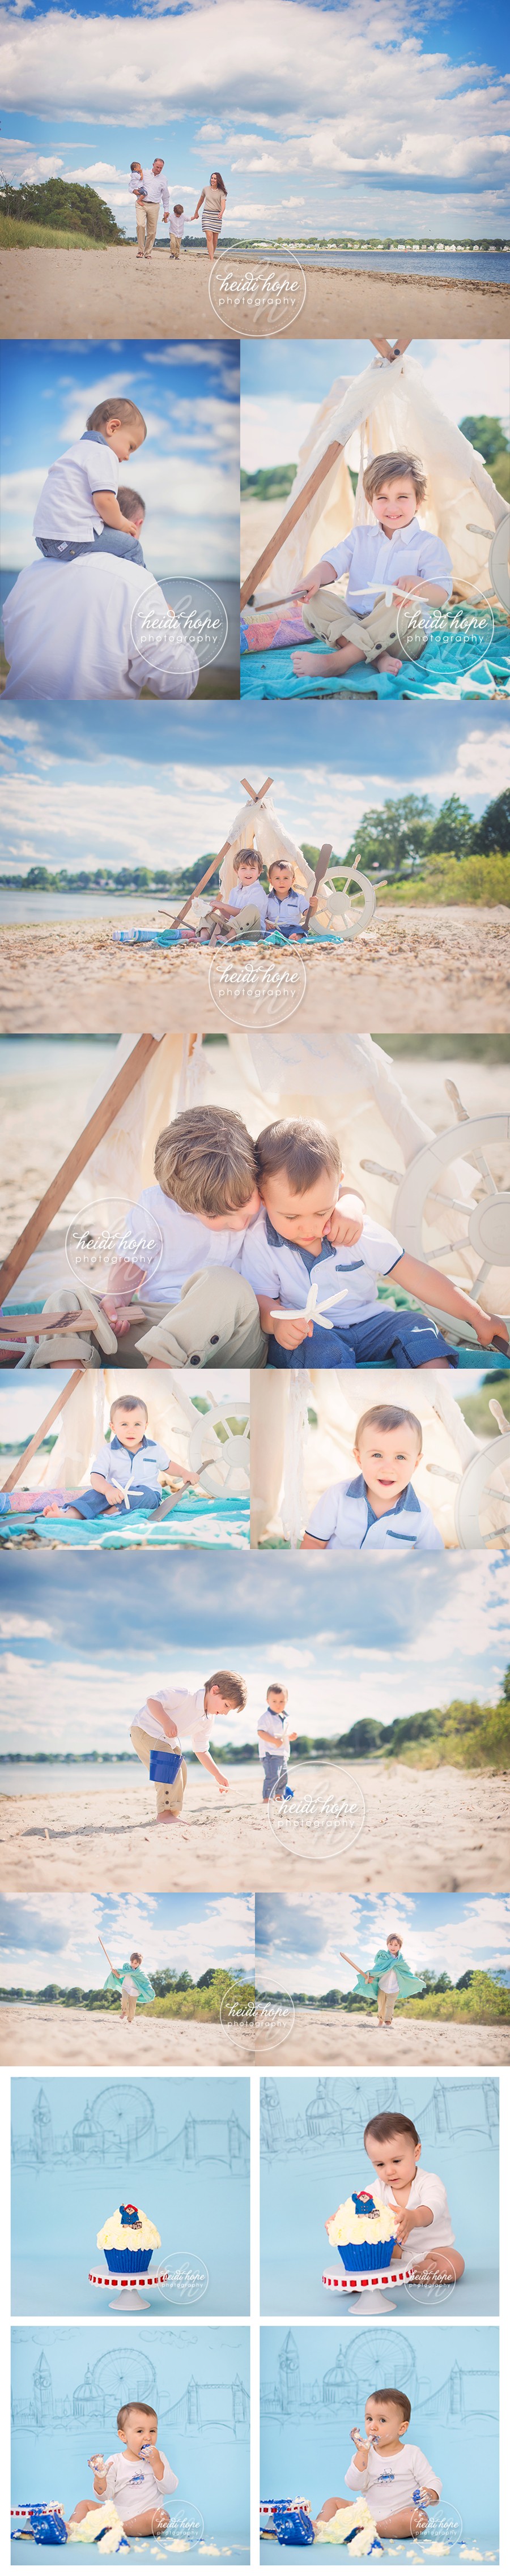 outdoor family beach session with paddington bear cakesmash for little boys